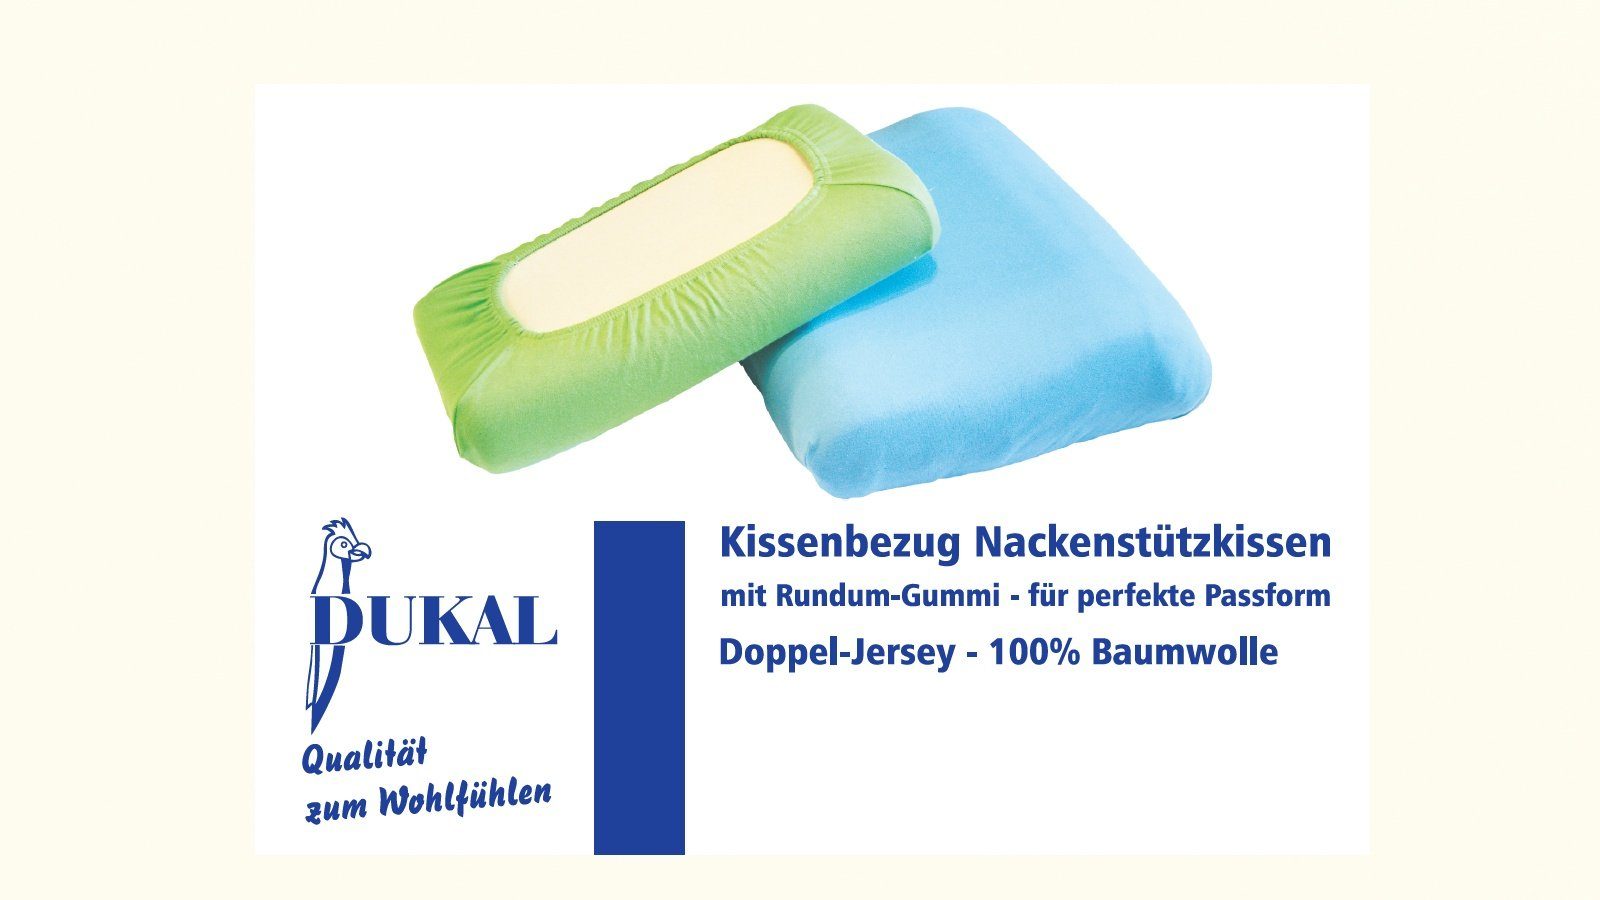 Kissenbezug Schlaraffia Support Geltex Nackenstützkissen, DUKAL (1 Stück), aus hochwertigem Doppel-Jersey, 100% Baumwolle, mit Spannumrandung, Made in Germany Perlweiss